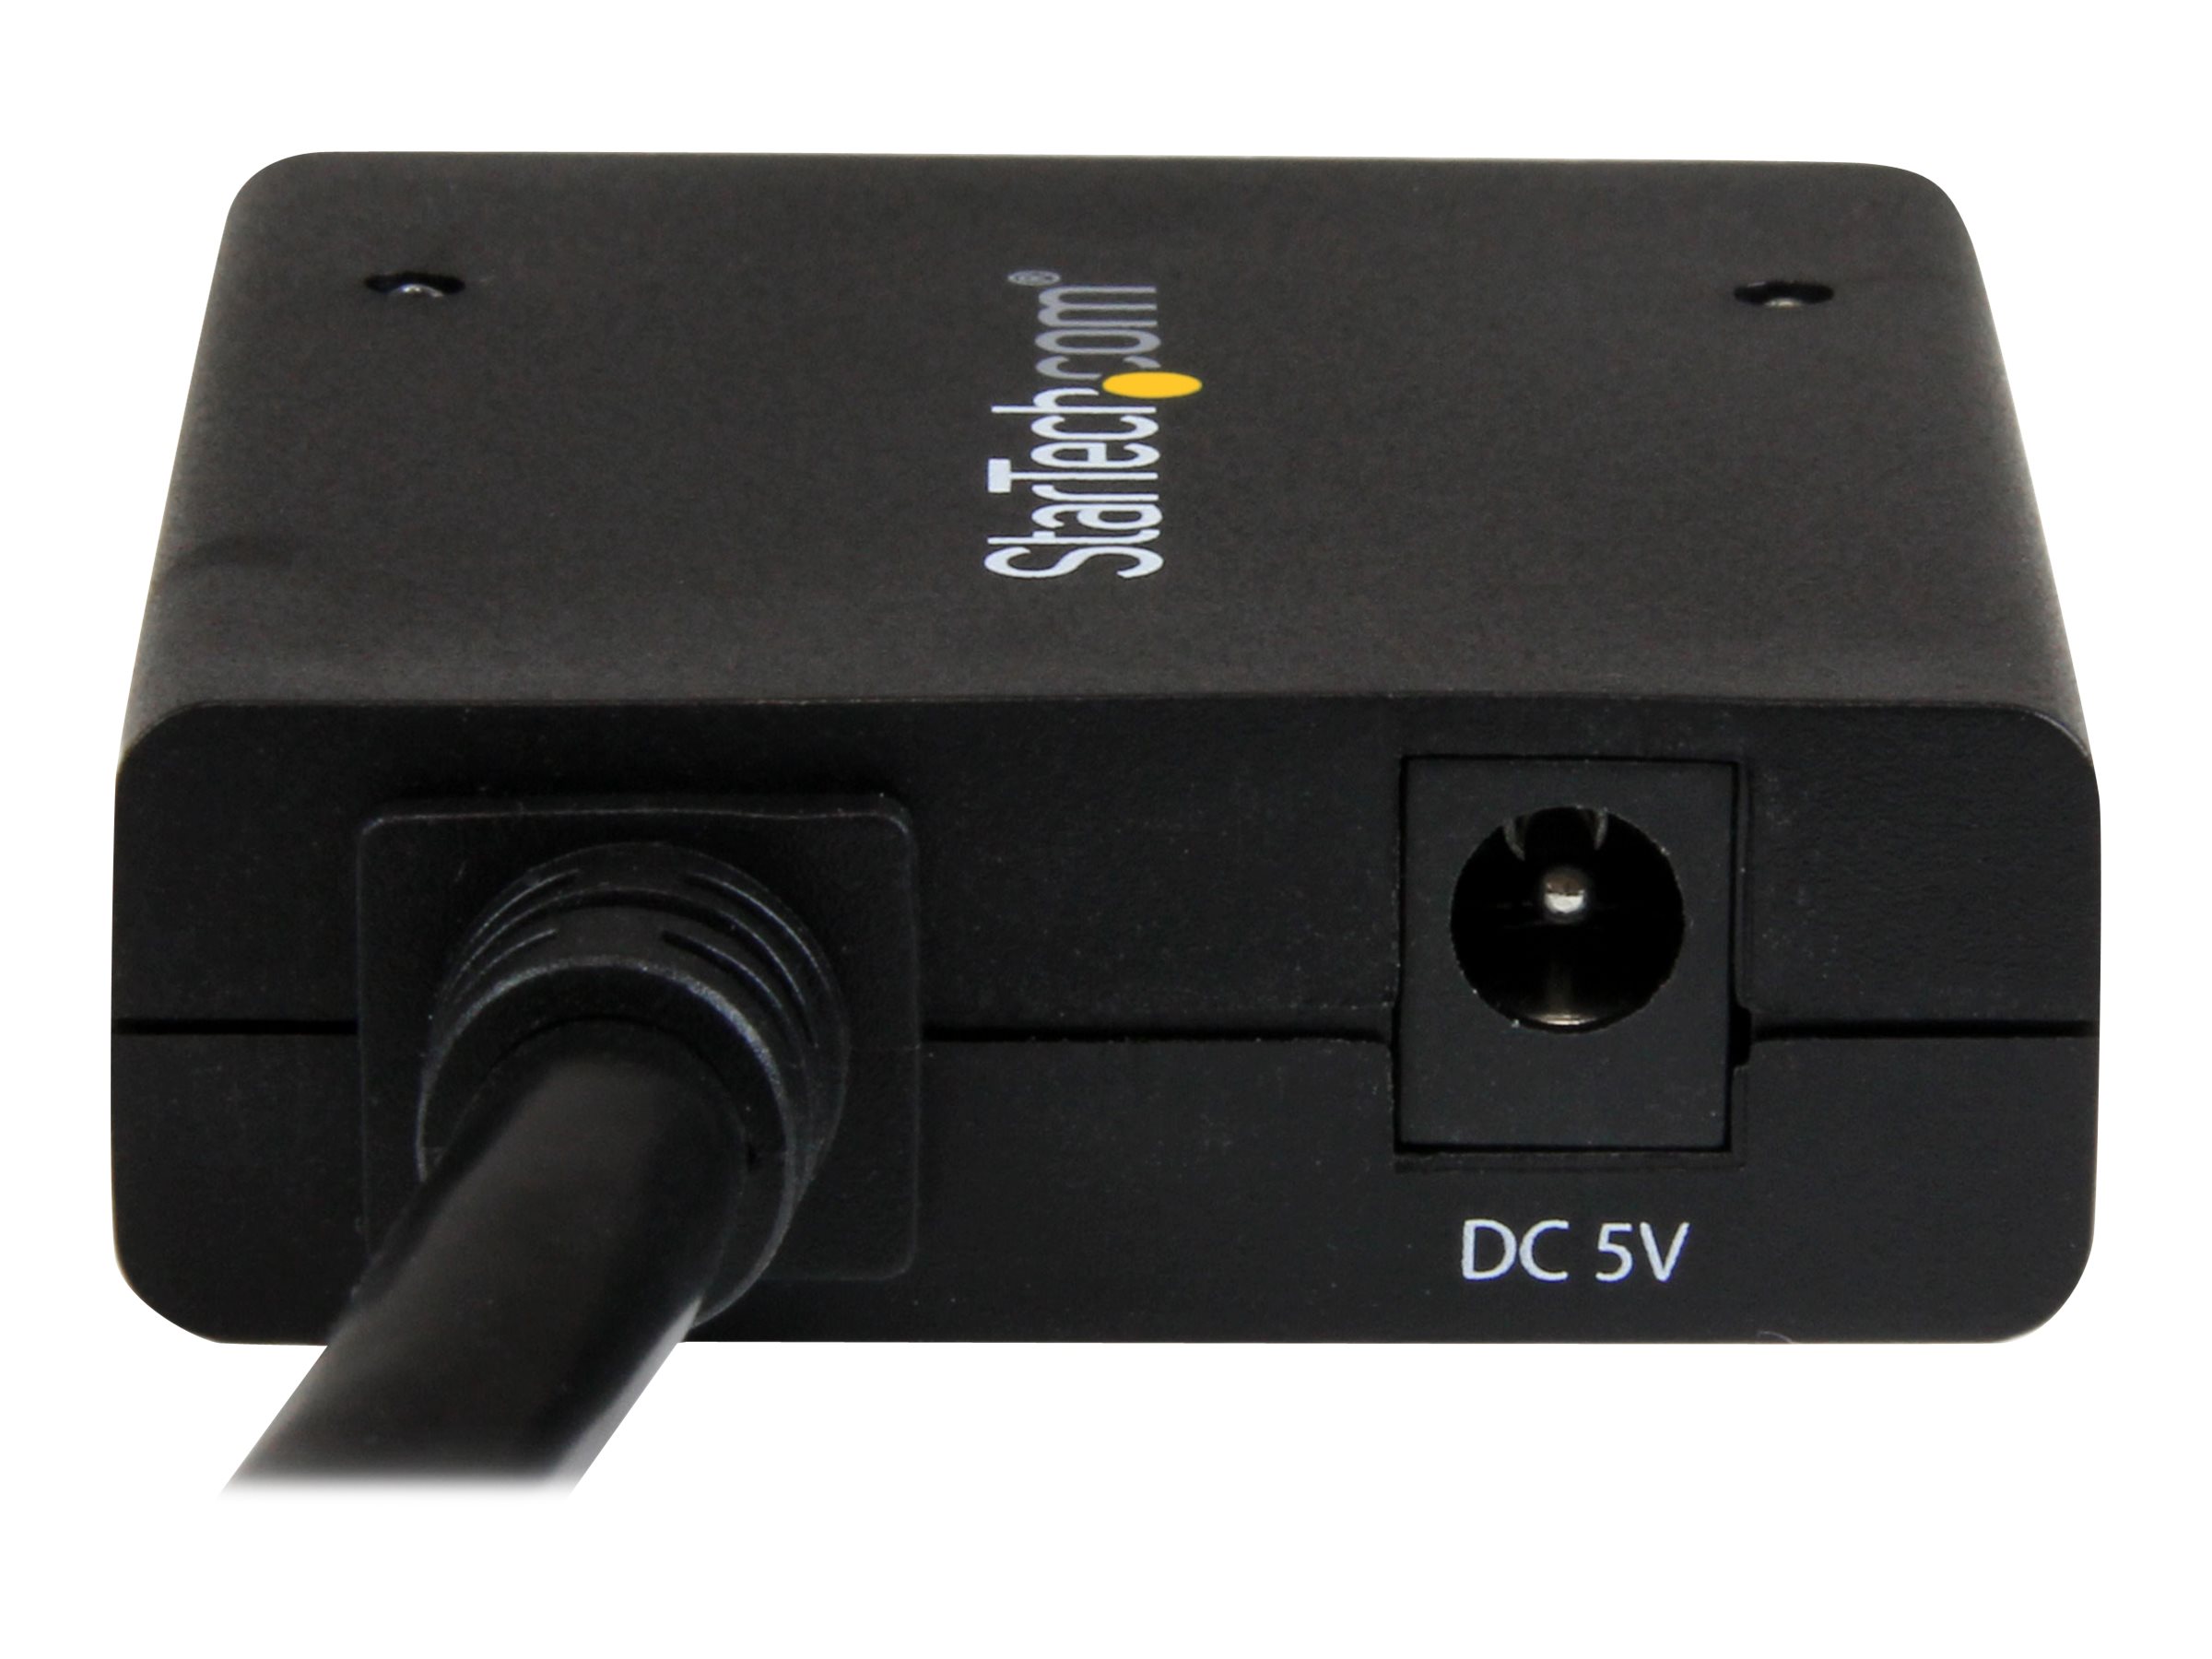 ST122HD4KU - StarTech.com HDMI Cable Splitter - 2 Port - 4K 30Hz